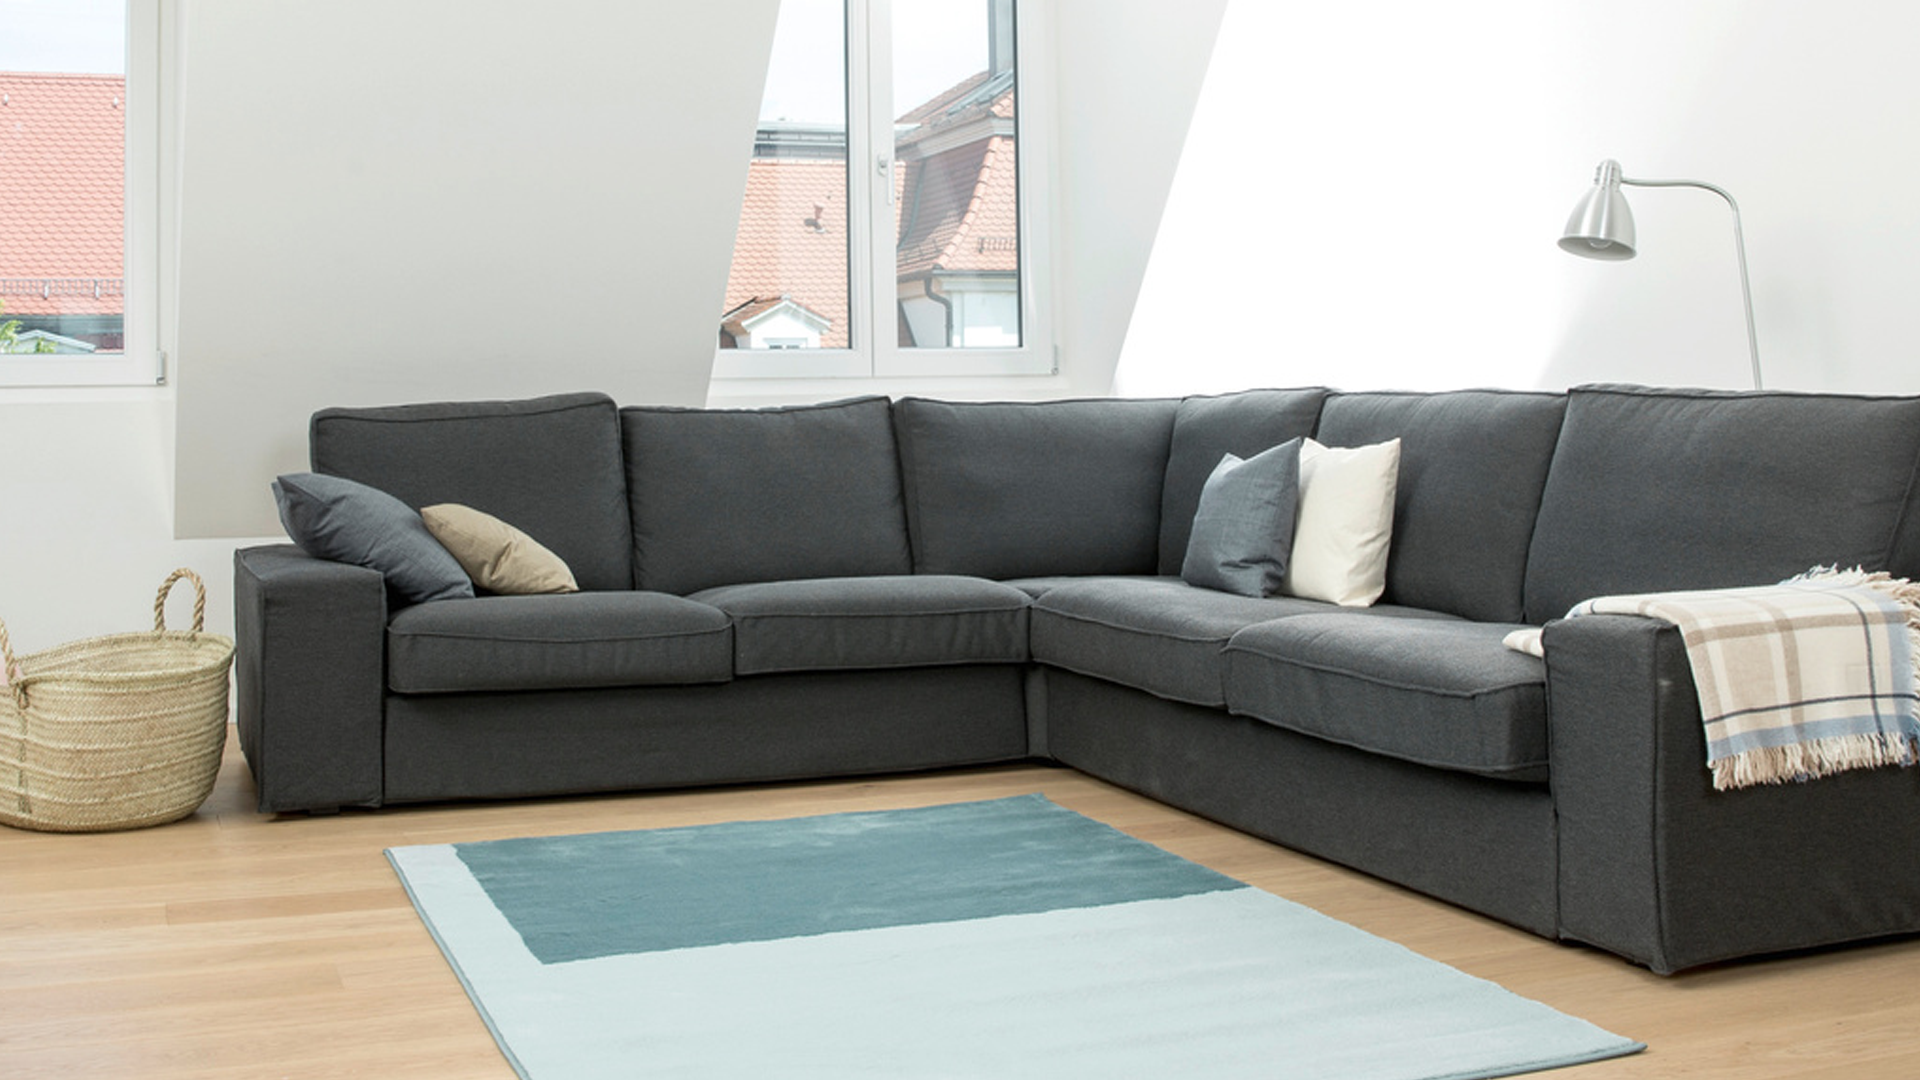 Comment bien nettoyer un canapé en tissu ? - Magazine Avantages